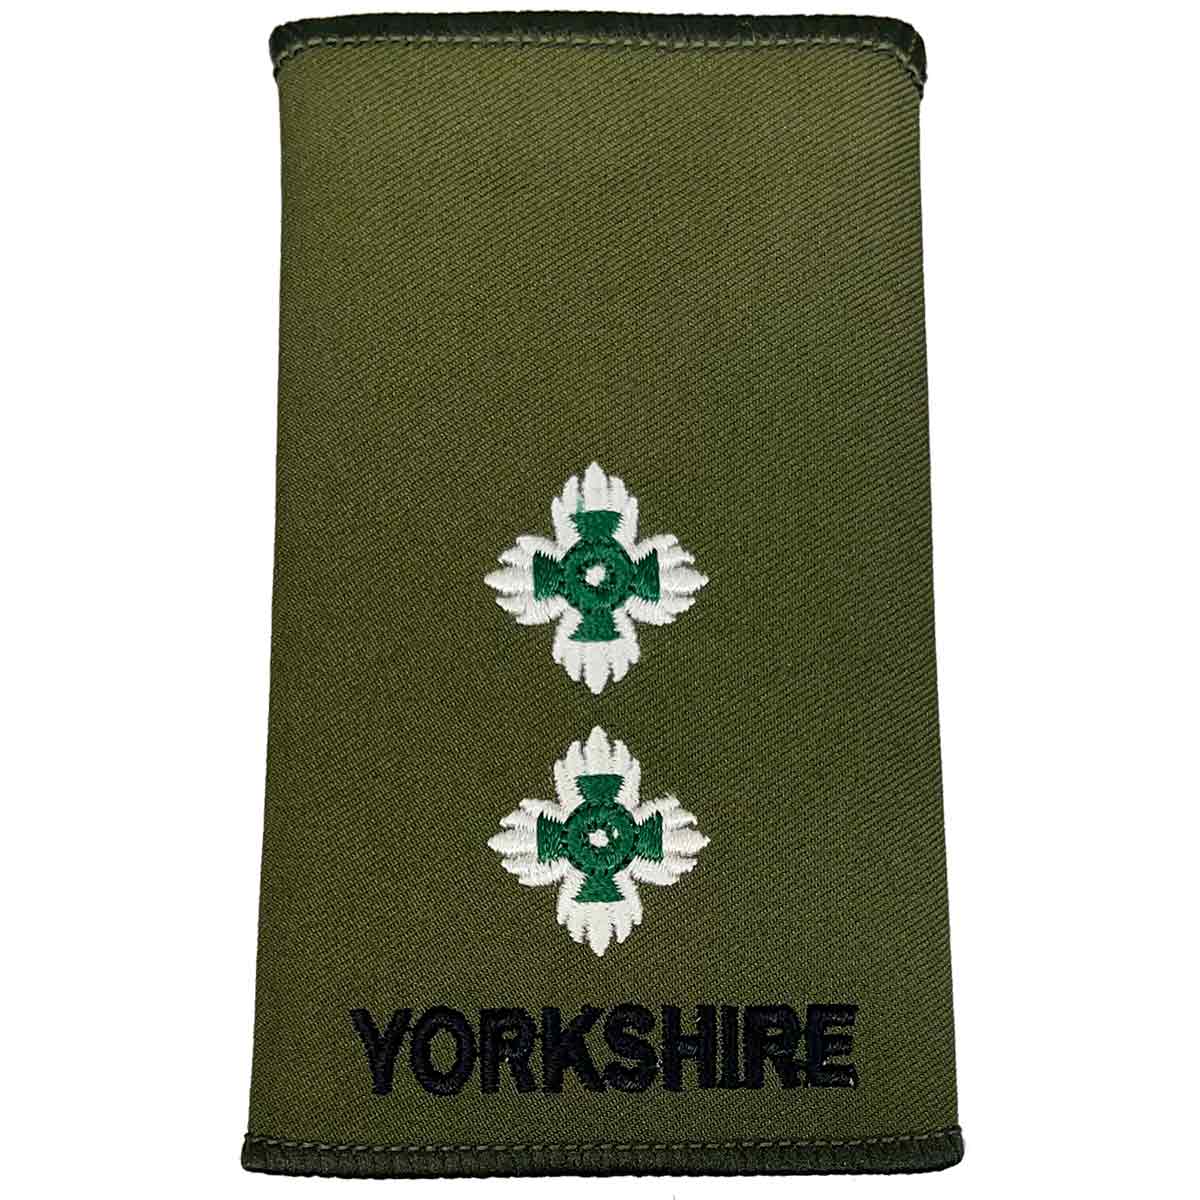 Yorkshire Regiment Olive Green Rank Slides (Pair) - John Bull Clothing